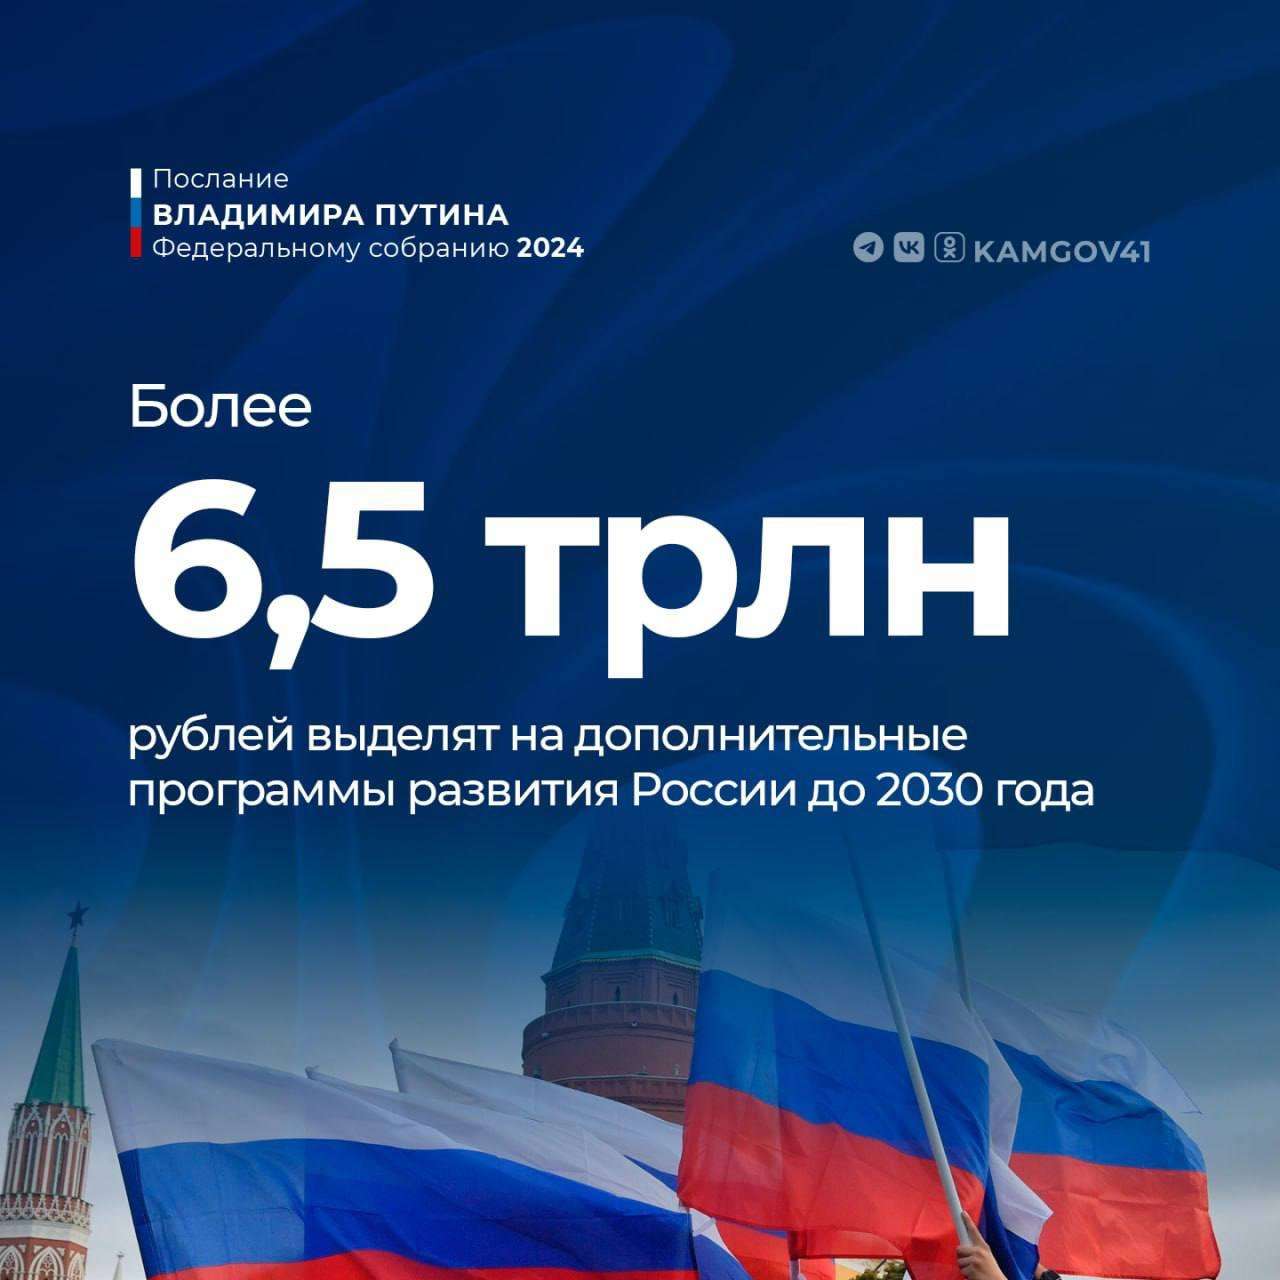 Президент РФ анонсировал выделение более 6,5 трлн. рублей на дополнительные программы развития России до 2030 года